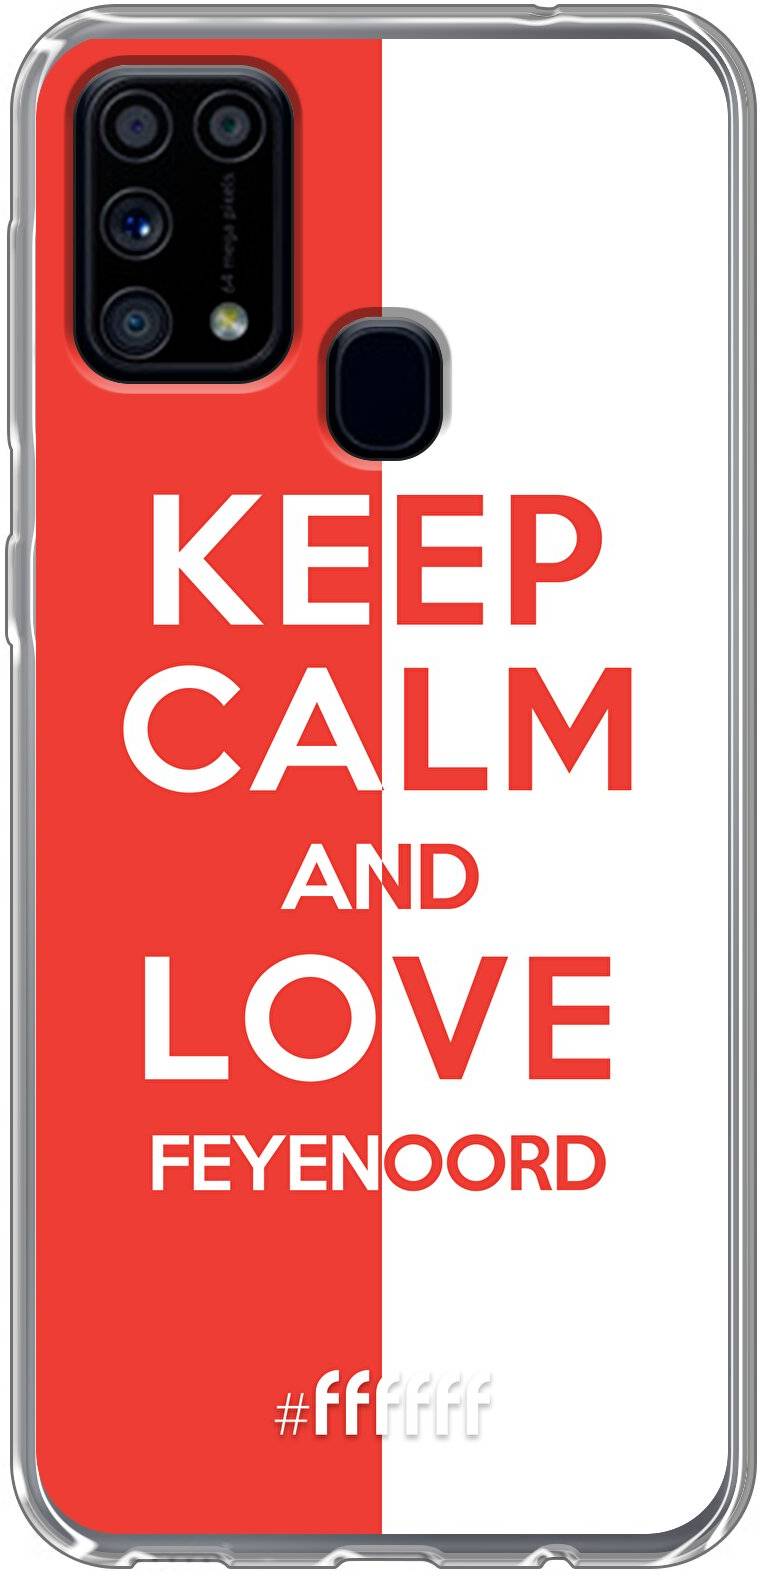 Feyenoord - Keep calm Galaxy M31